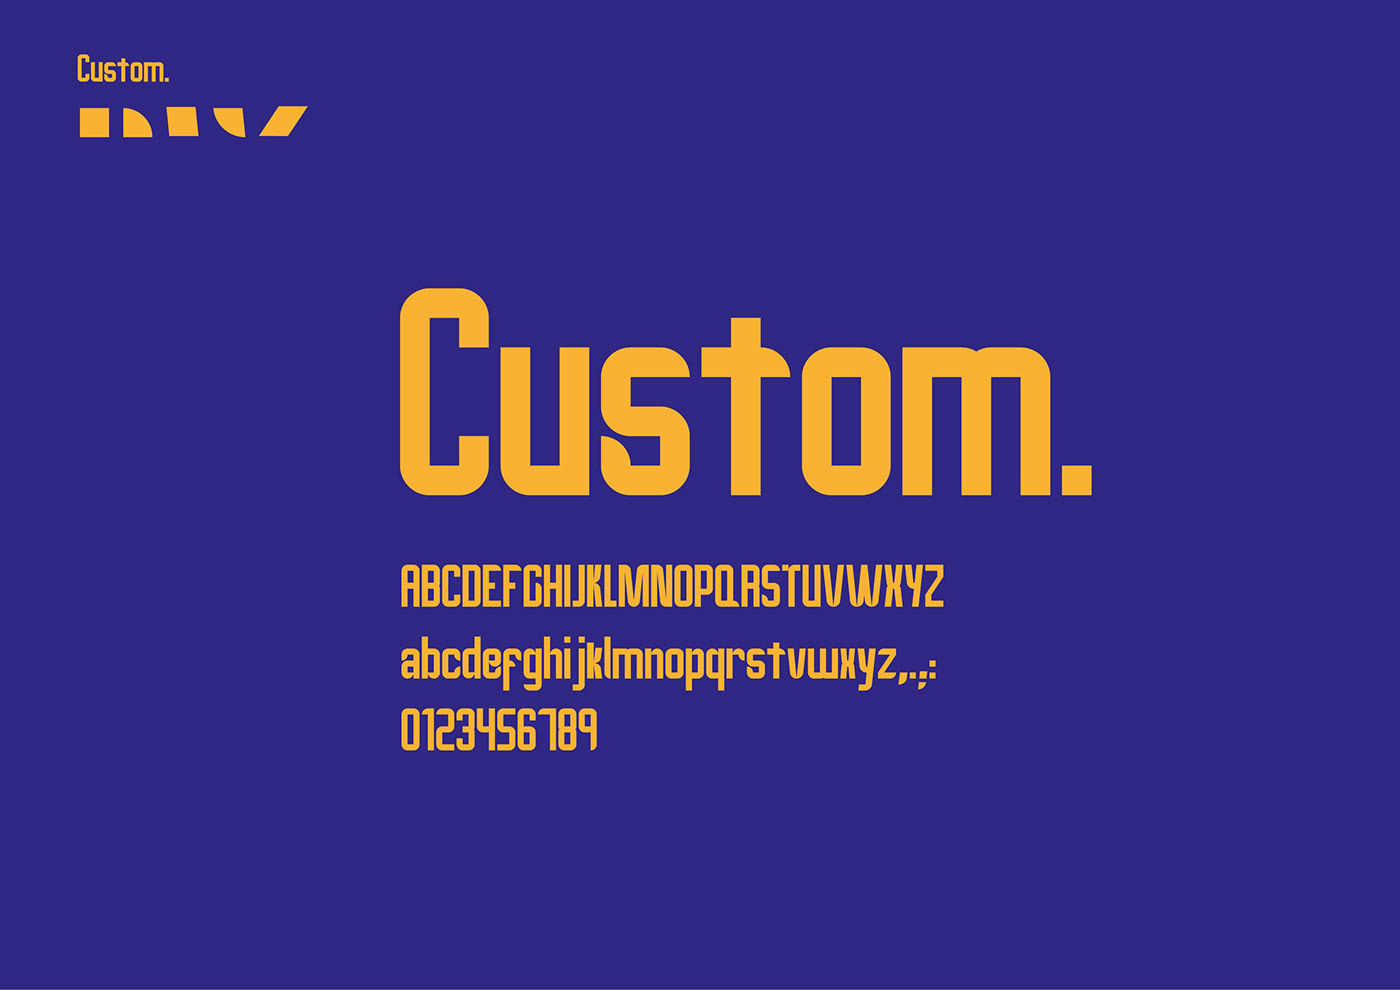 #Design #modulardesign #Tipografia #tipography 